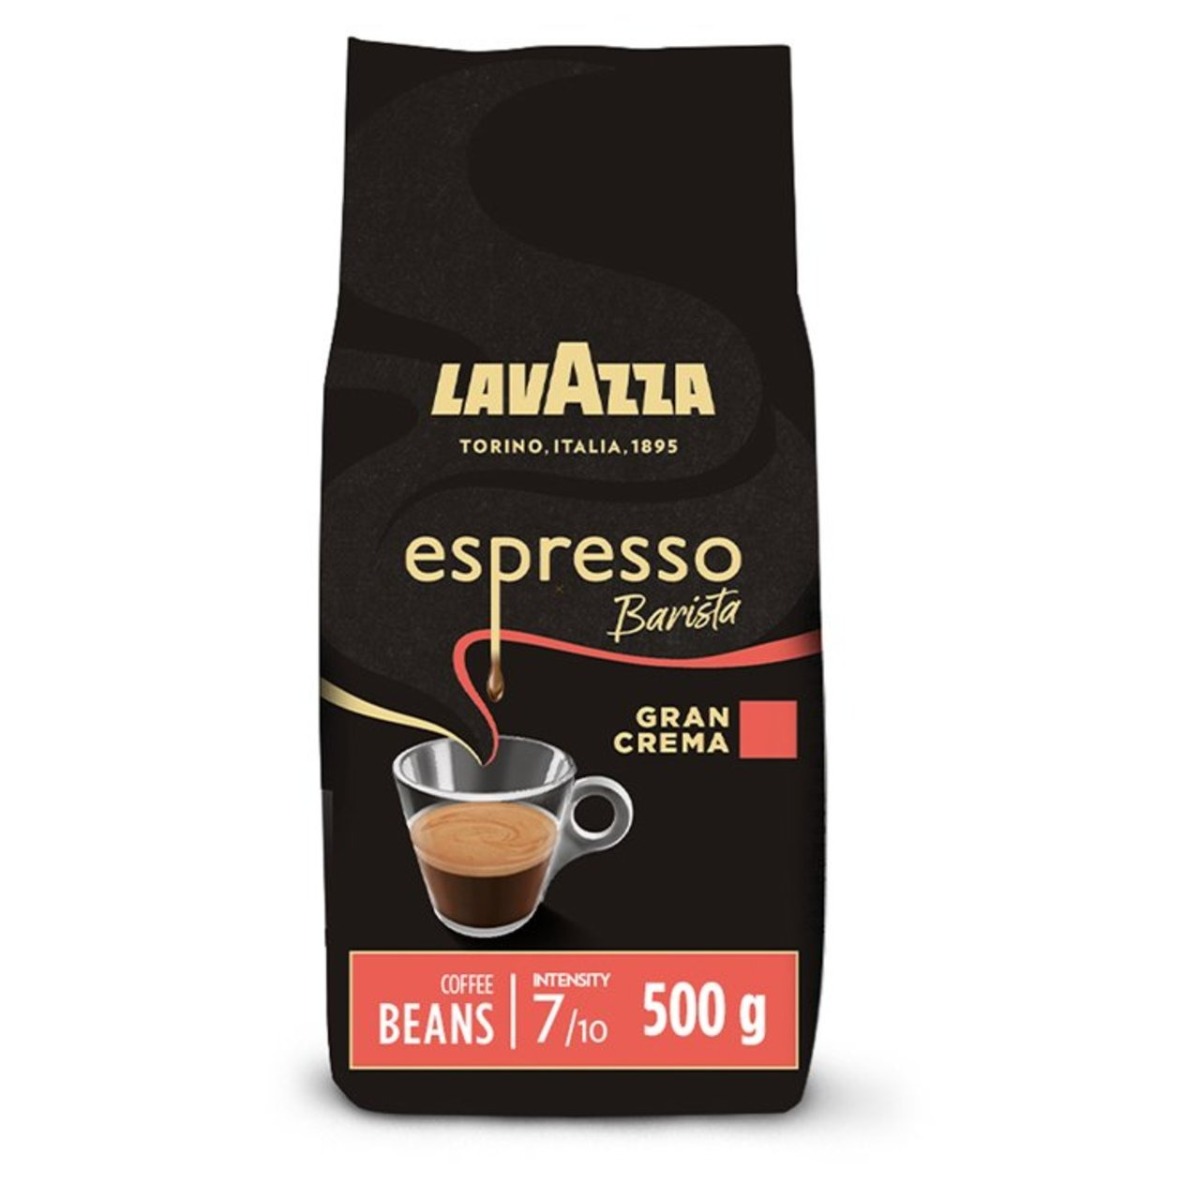 Lavazza Espresso Barista Gran Crema koffiebonen 500 gram